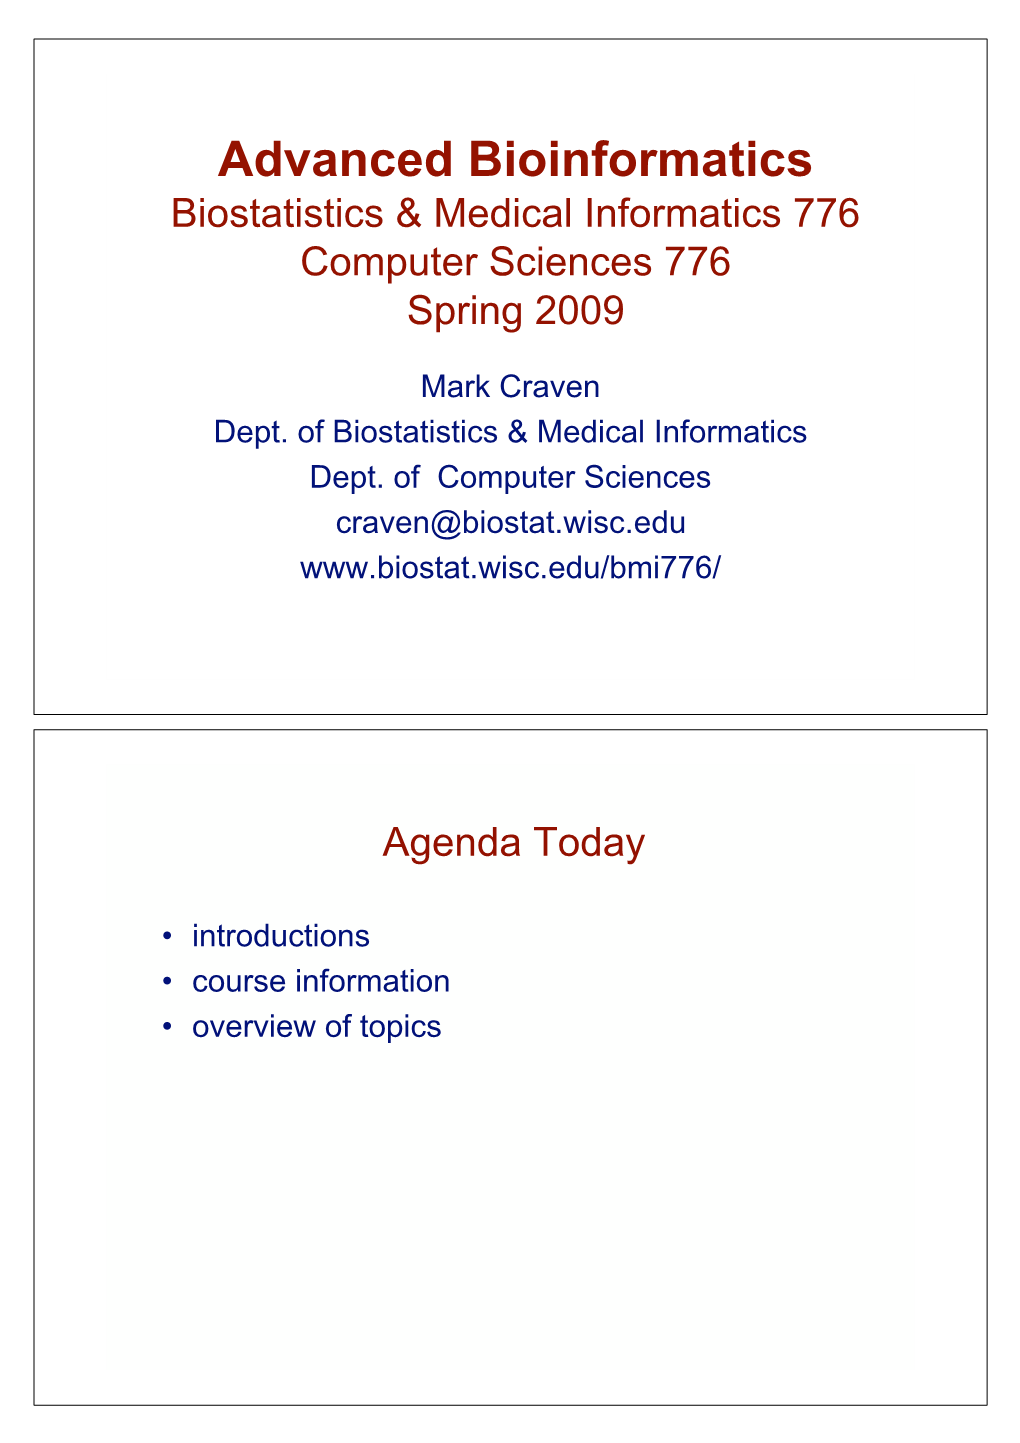 Advanced Bioinformatics Biostatistics & Medical Informatics 776 Computer Sciences 776 Spring 2009